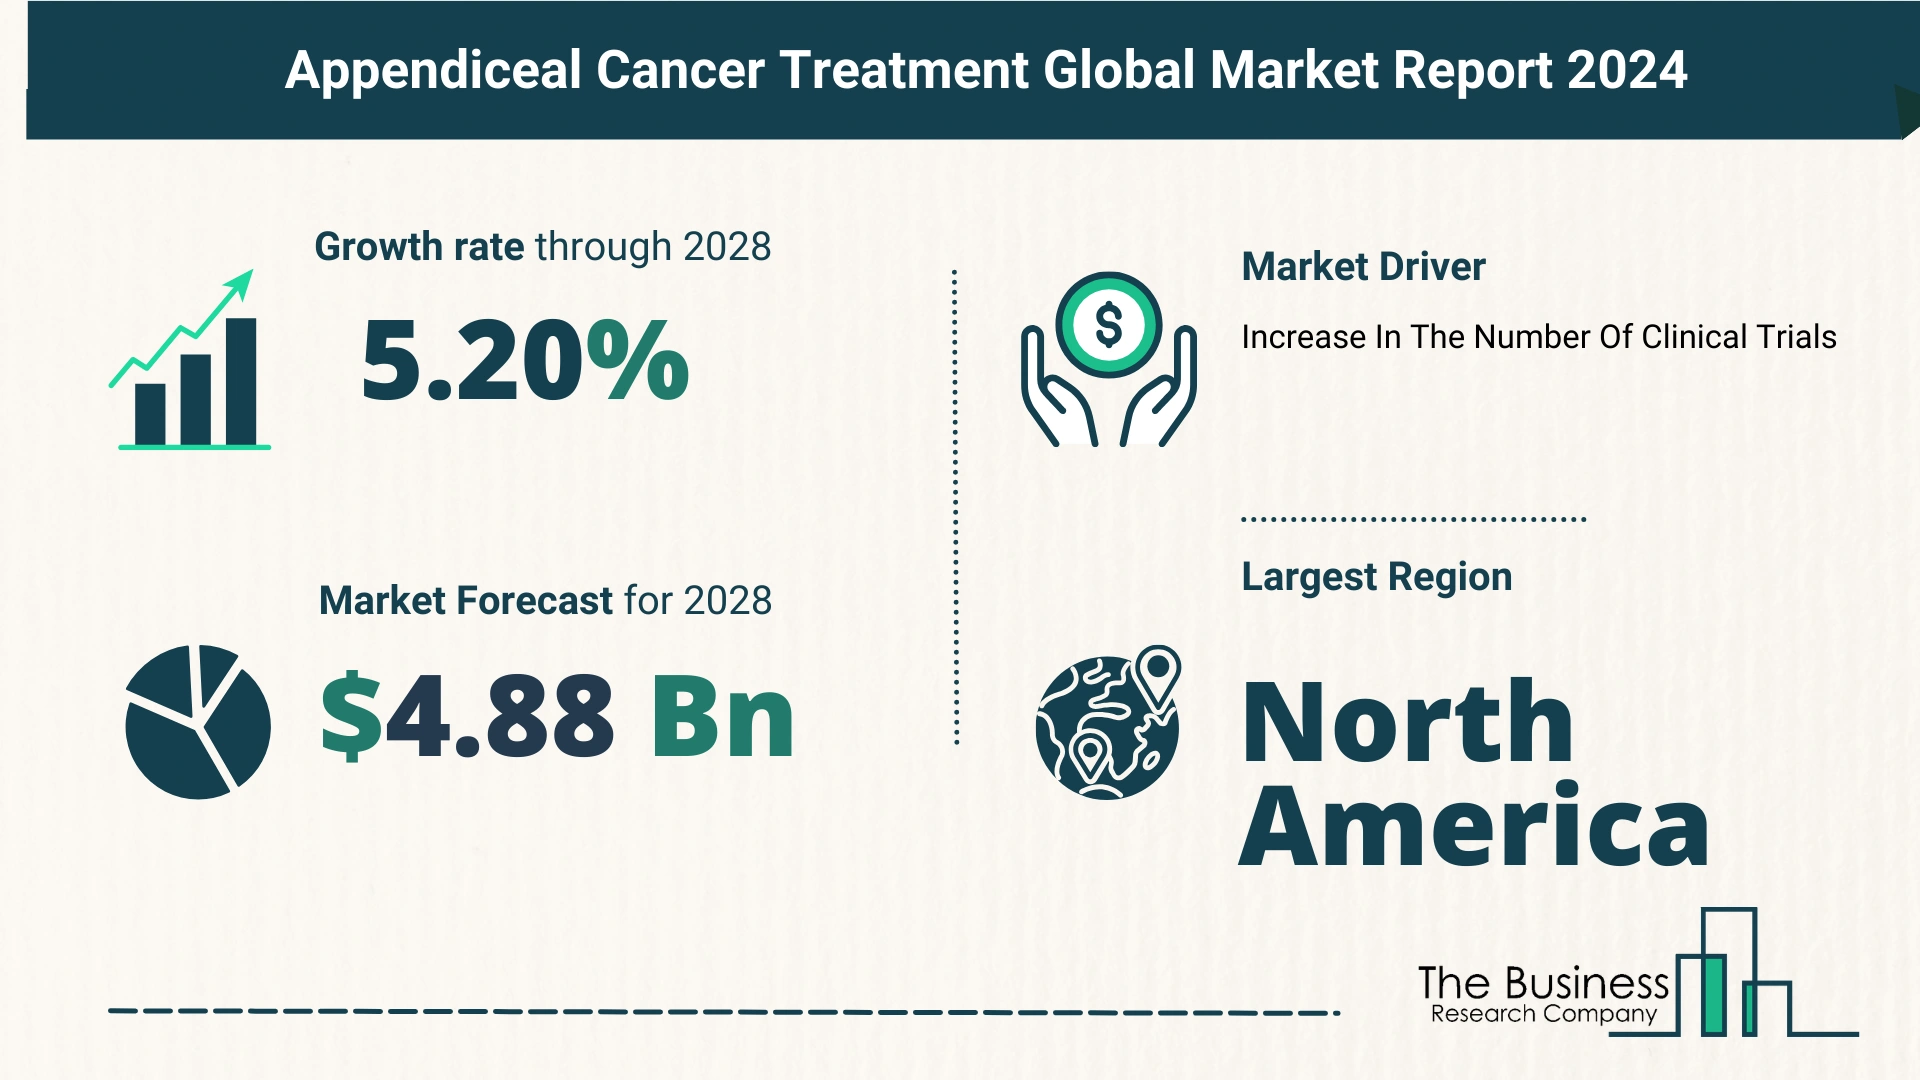 Global Appendiceal Cancer Treatment Market Size